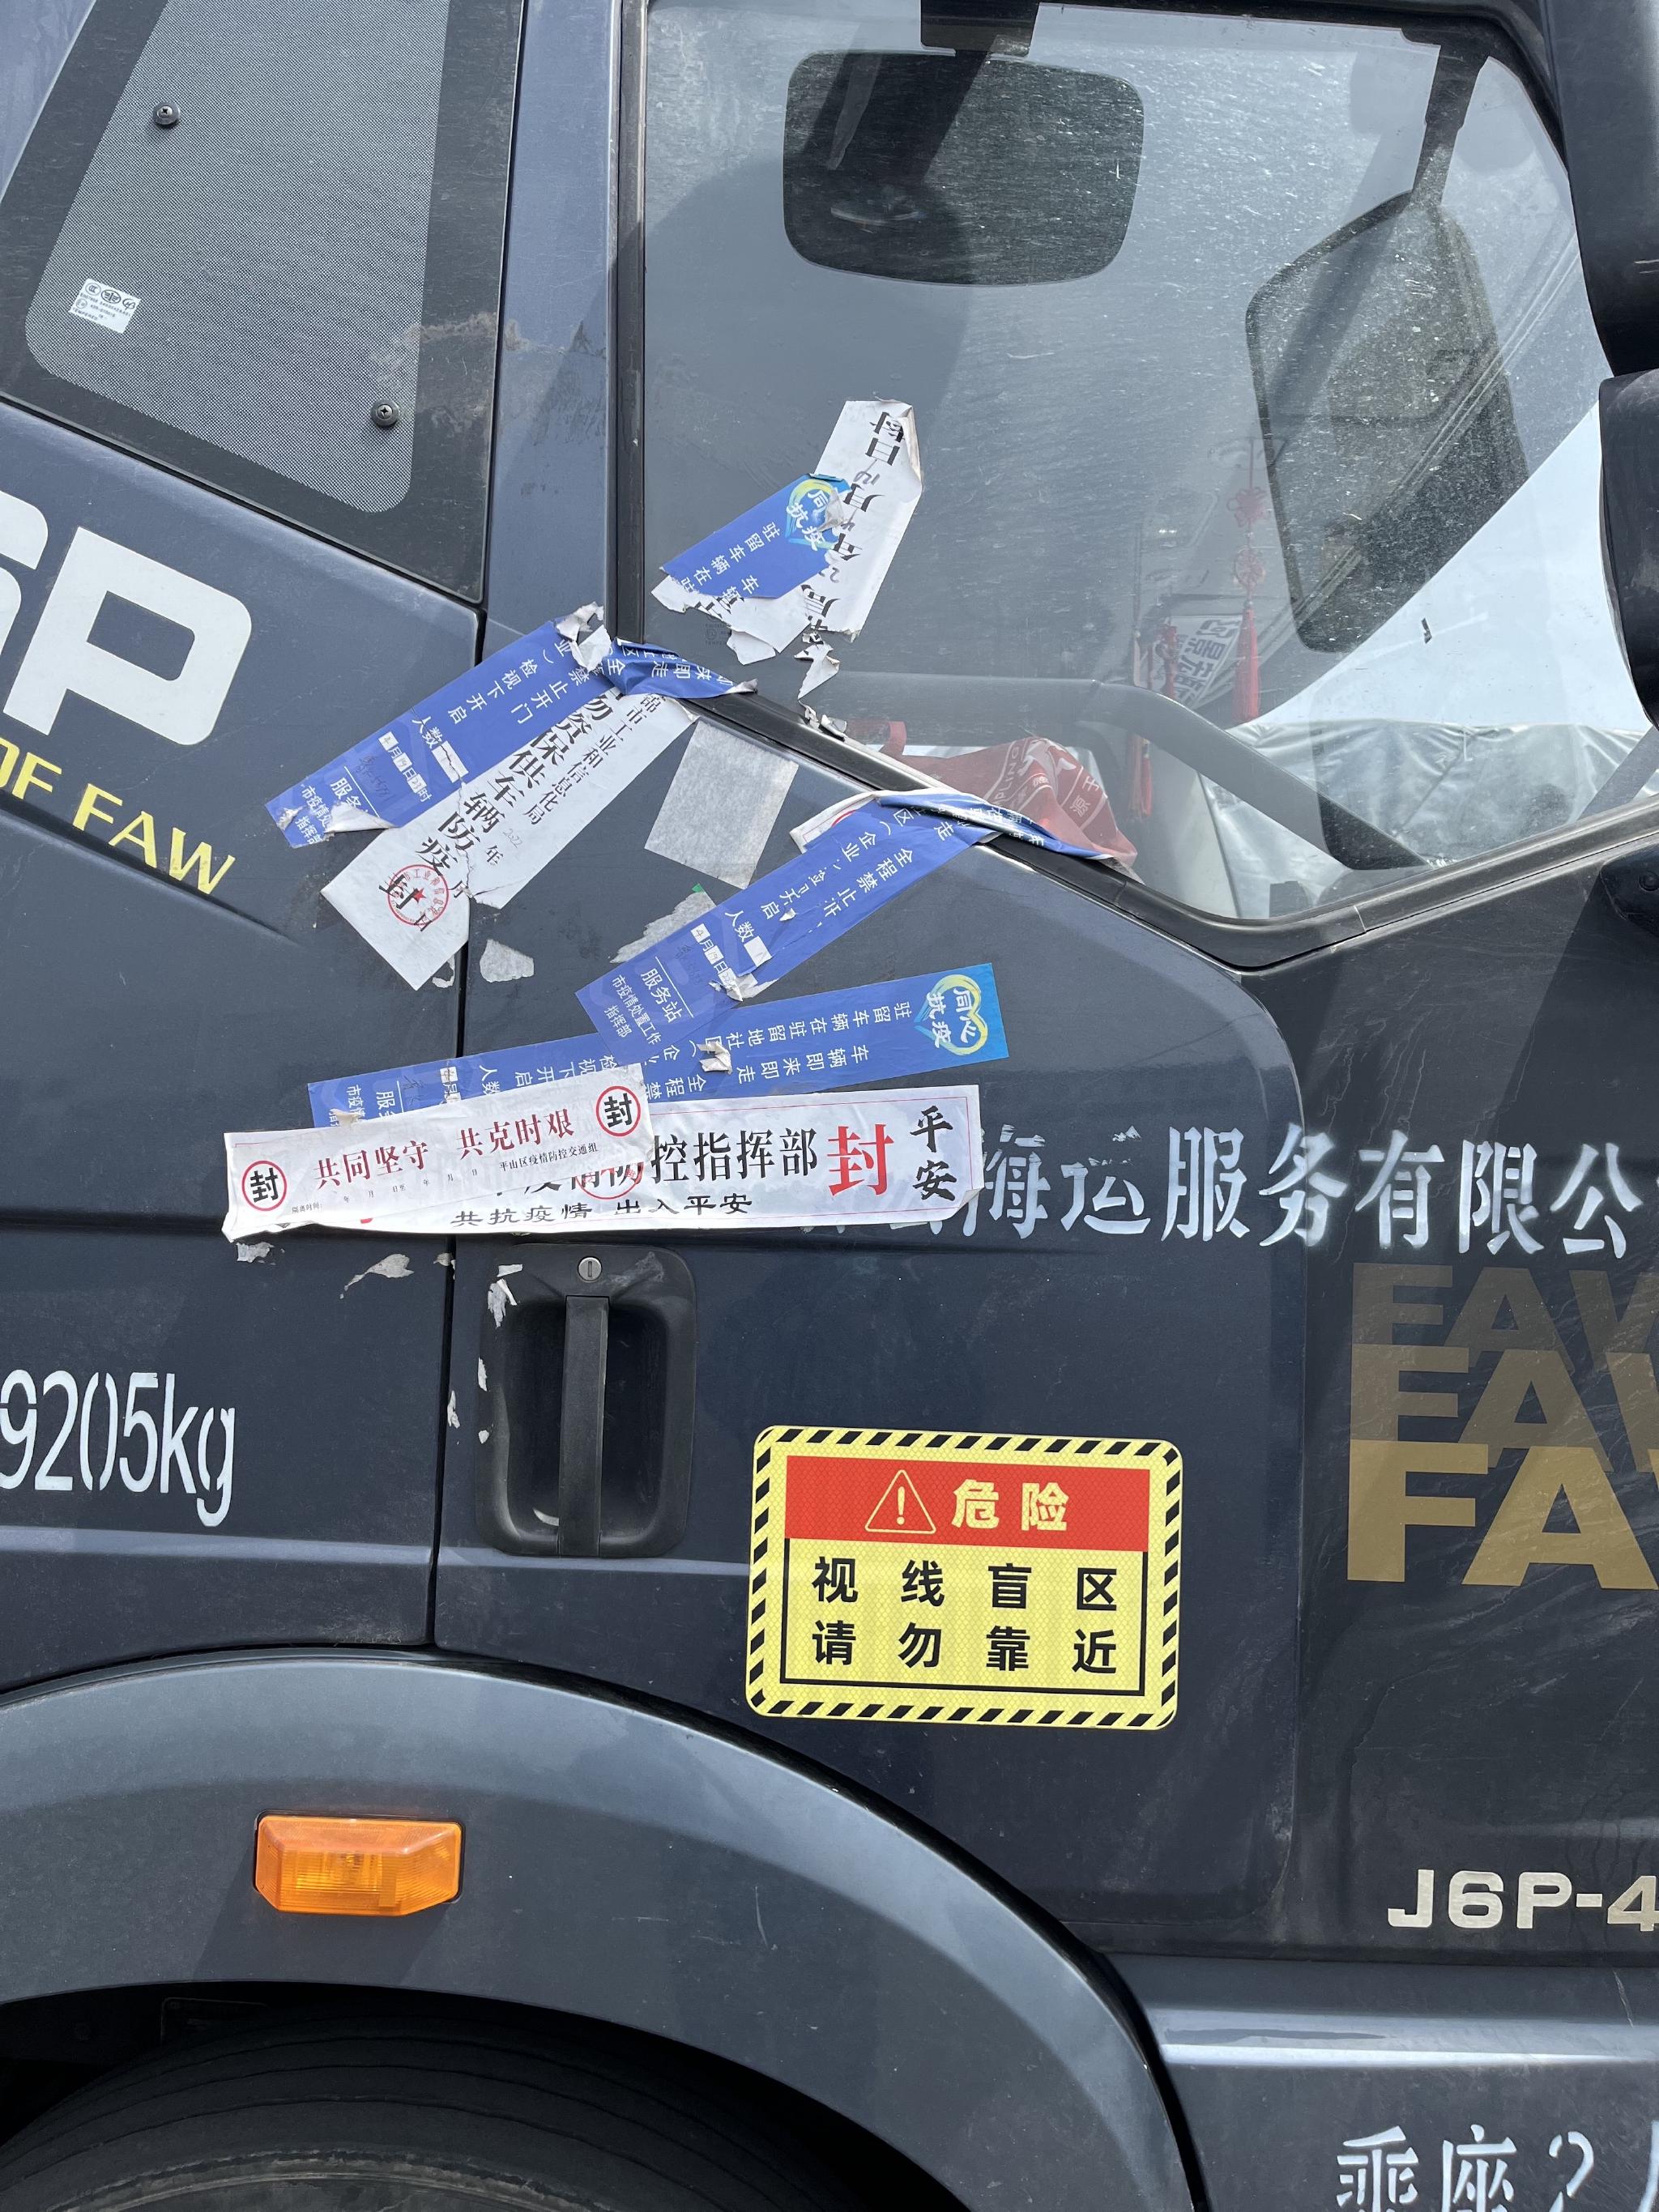 4月22日,大连湾港口的停车场,一辆卡车贴满了封条